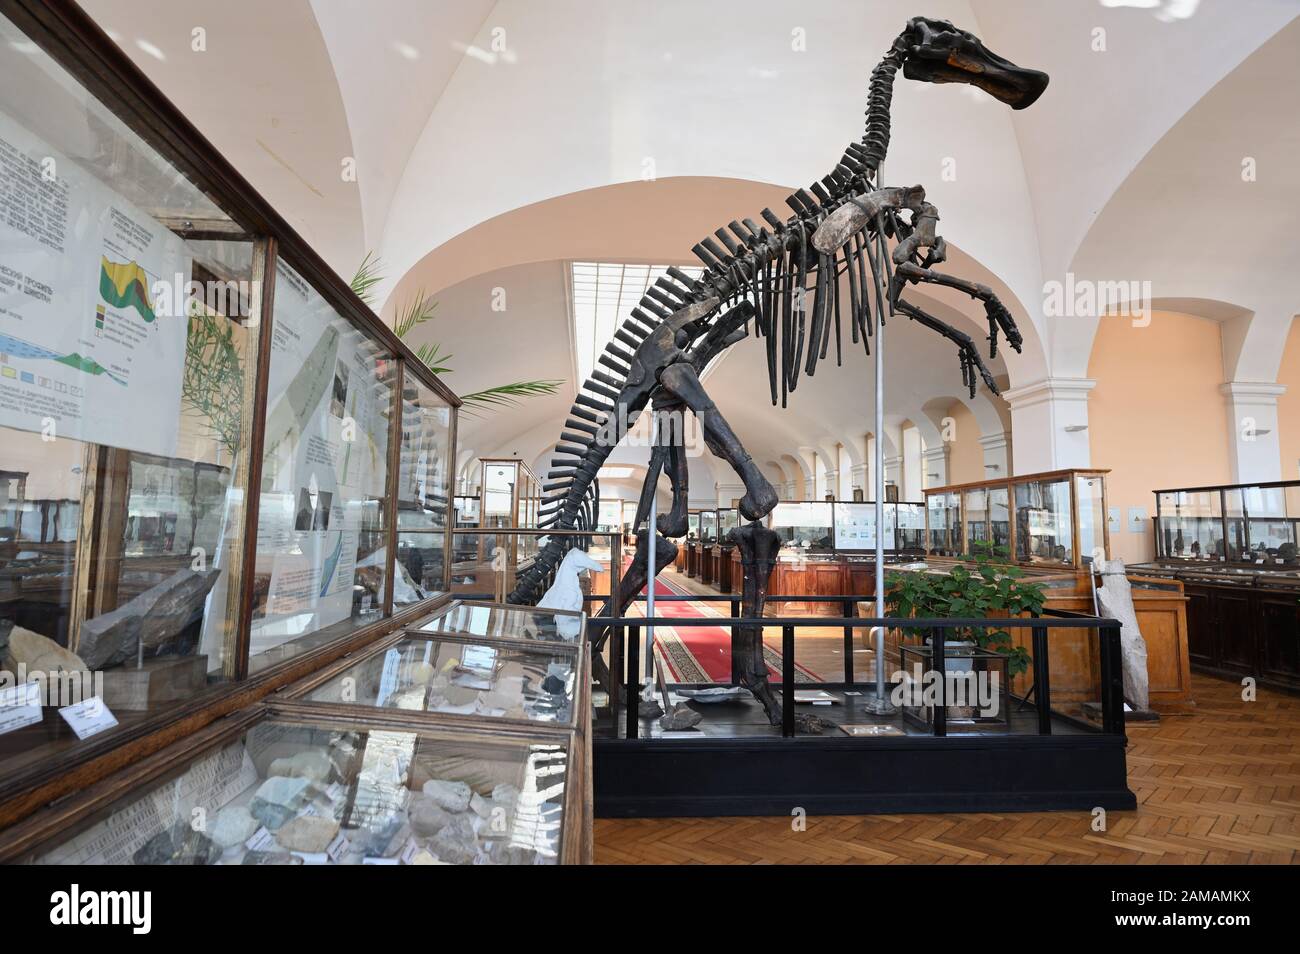 San Pietroburgo, Russia - 18 giugno 2018: Scheletro di dinosauro e minerali esposti nel museo geologico della ricerca centrale. Fondato nel 1882, il museo è aperto al pubblico dal 1930 Foto Stock